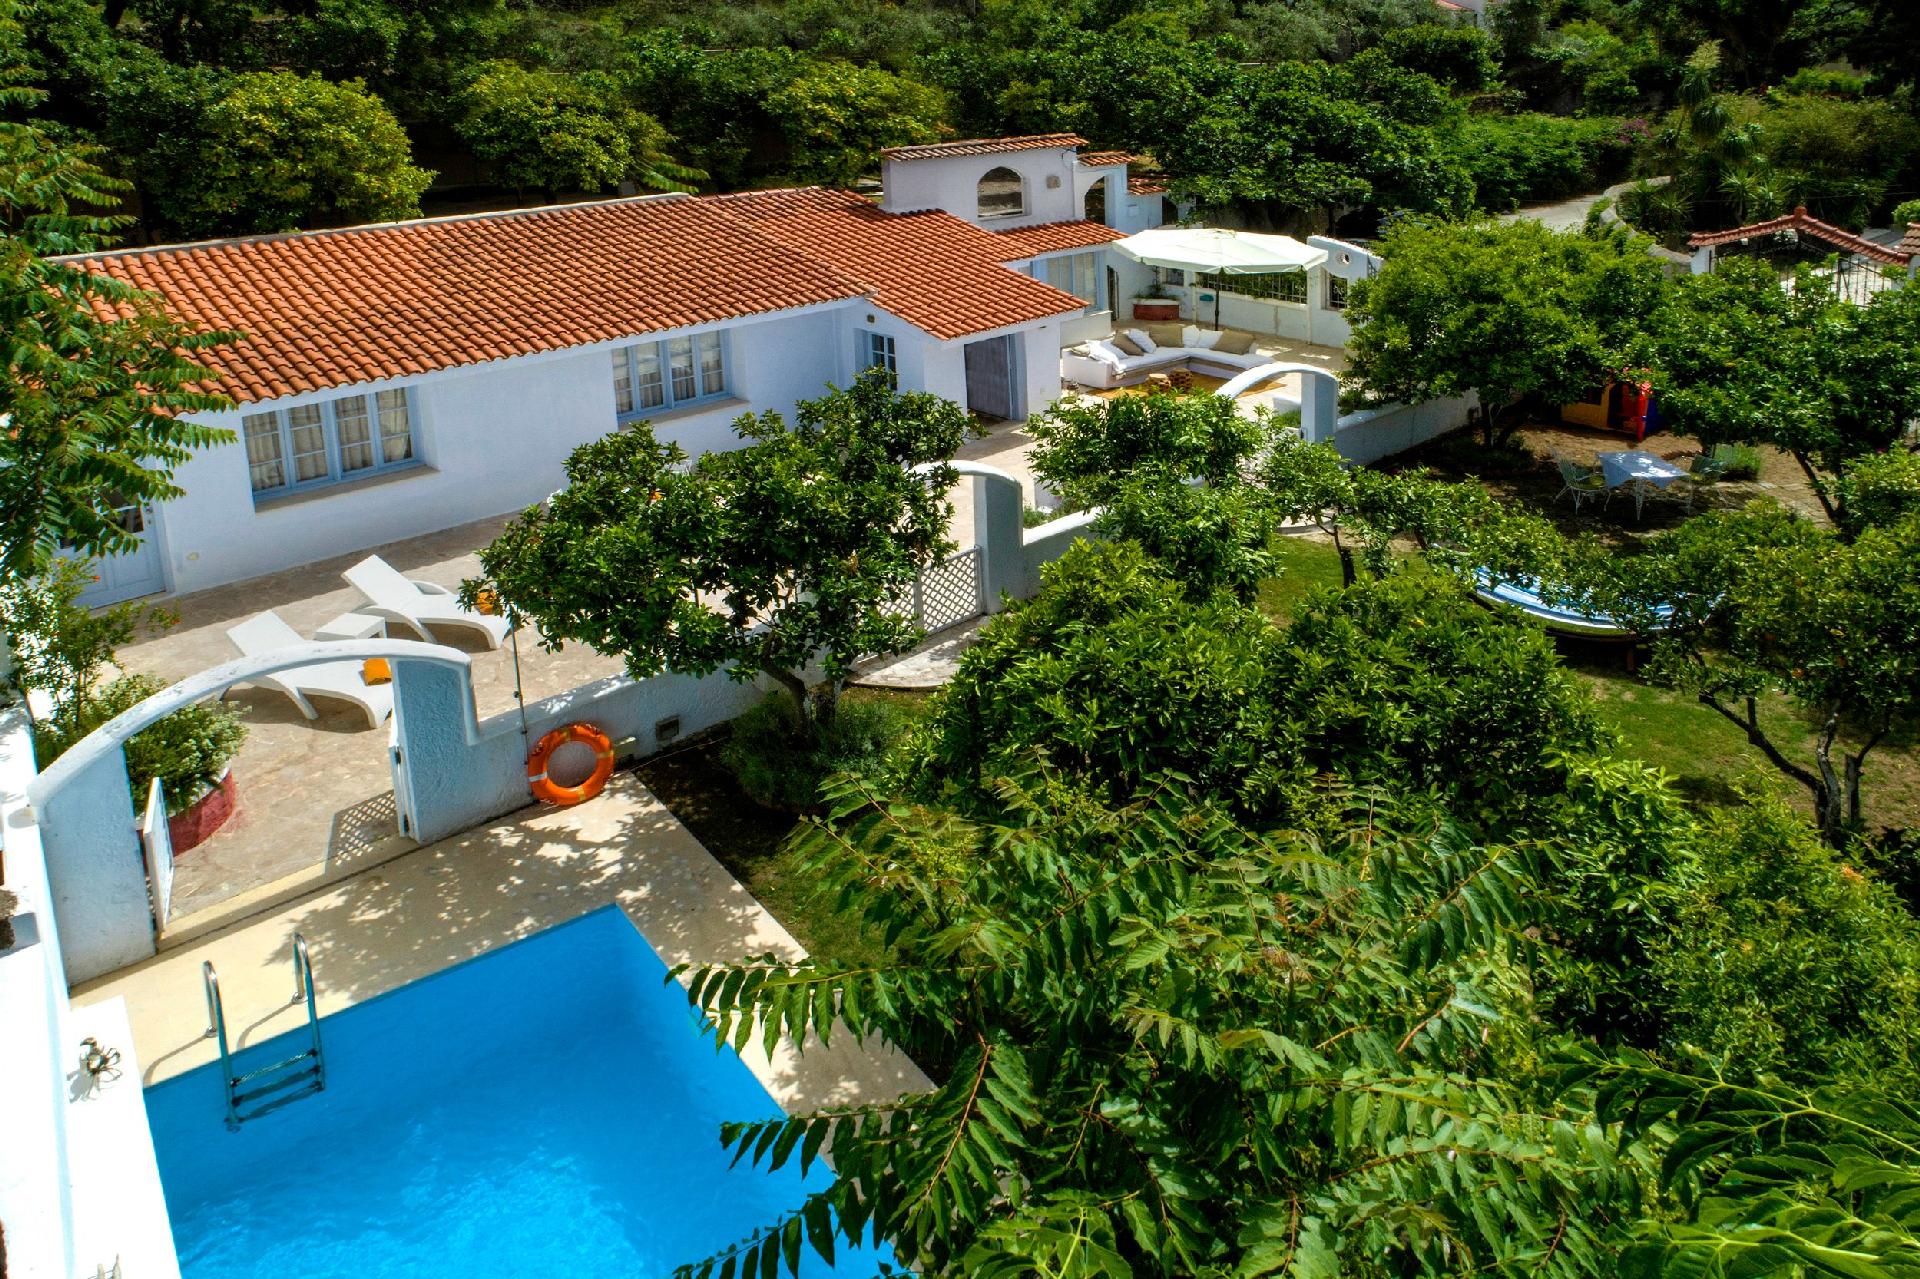 Ferienhaus mit Privatpool für 4 Personen  + 1 Ferienhaus in Griechenland